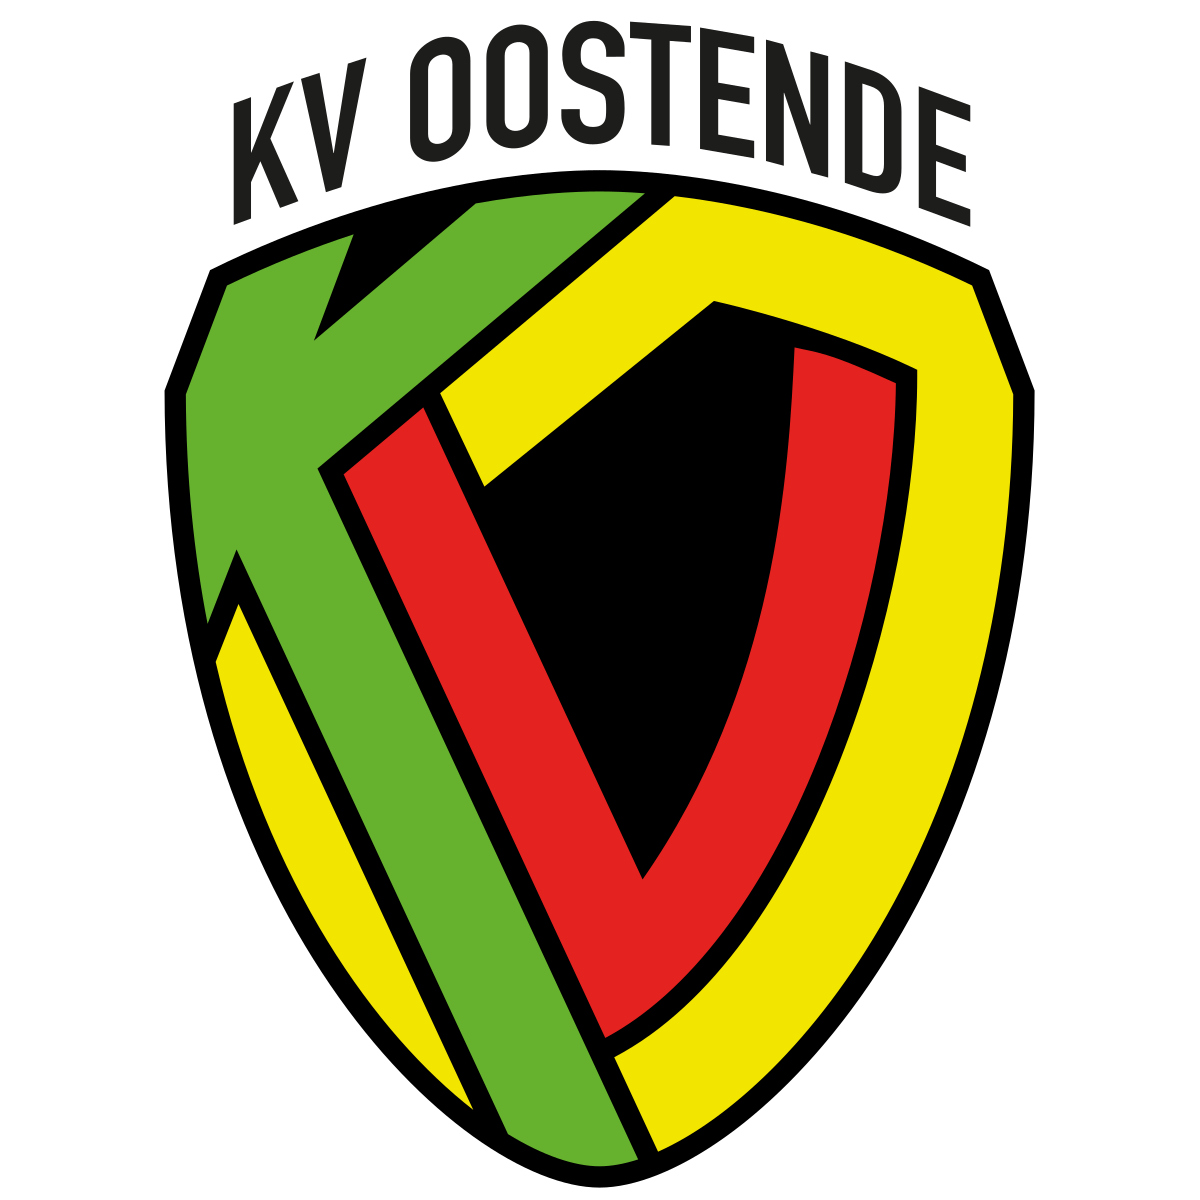 KV Oostende Logo.svg